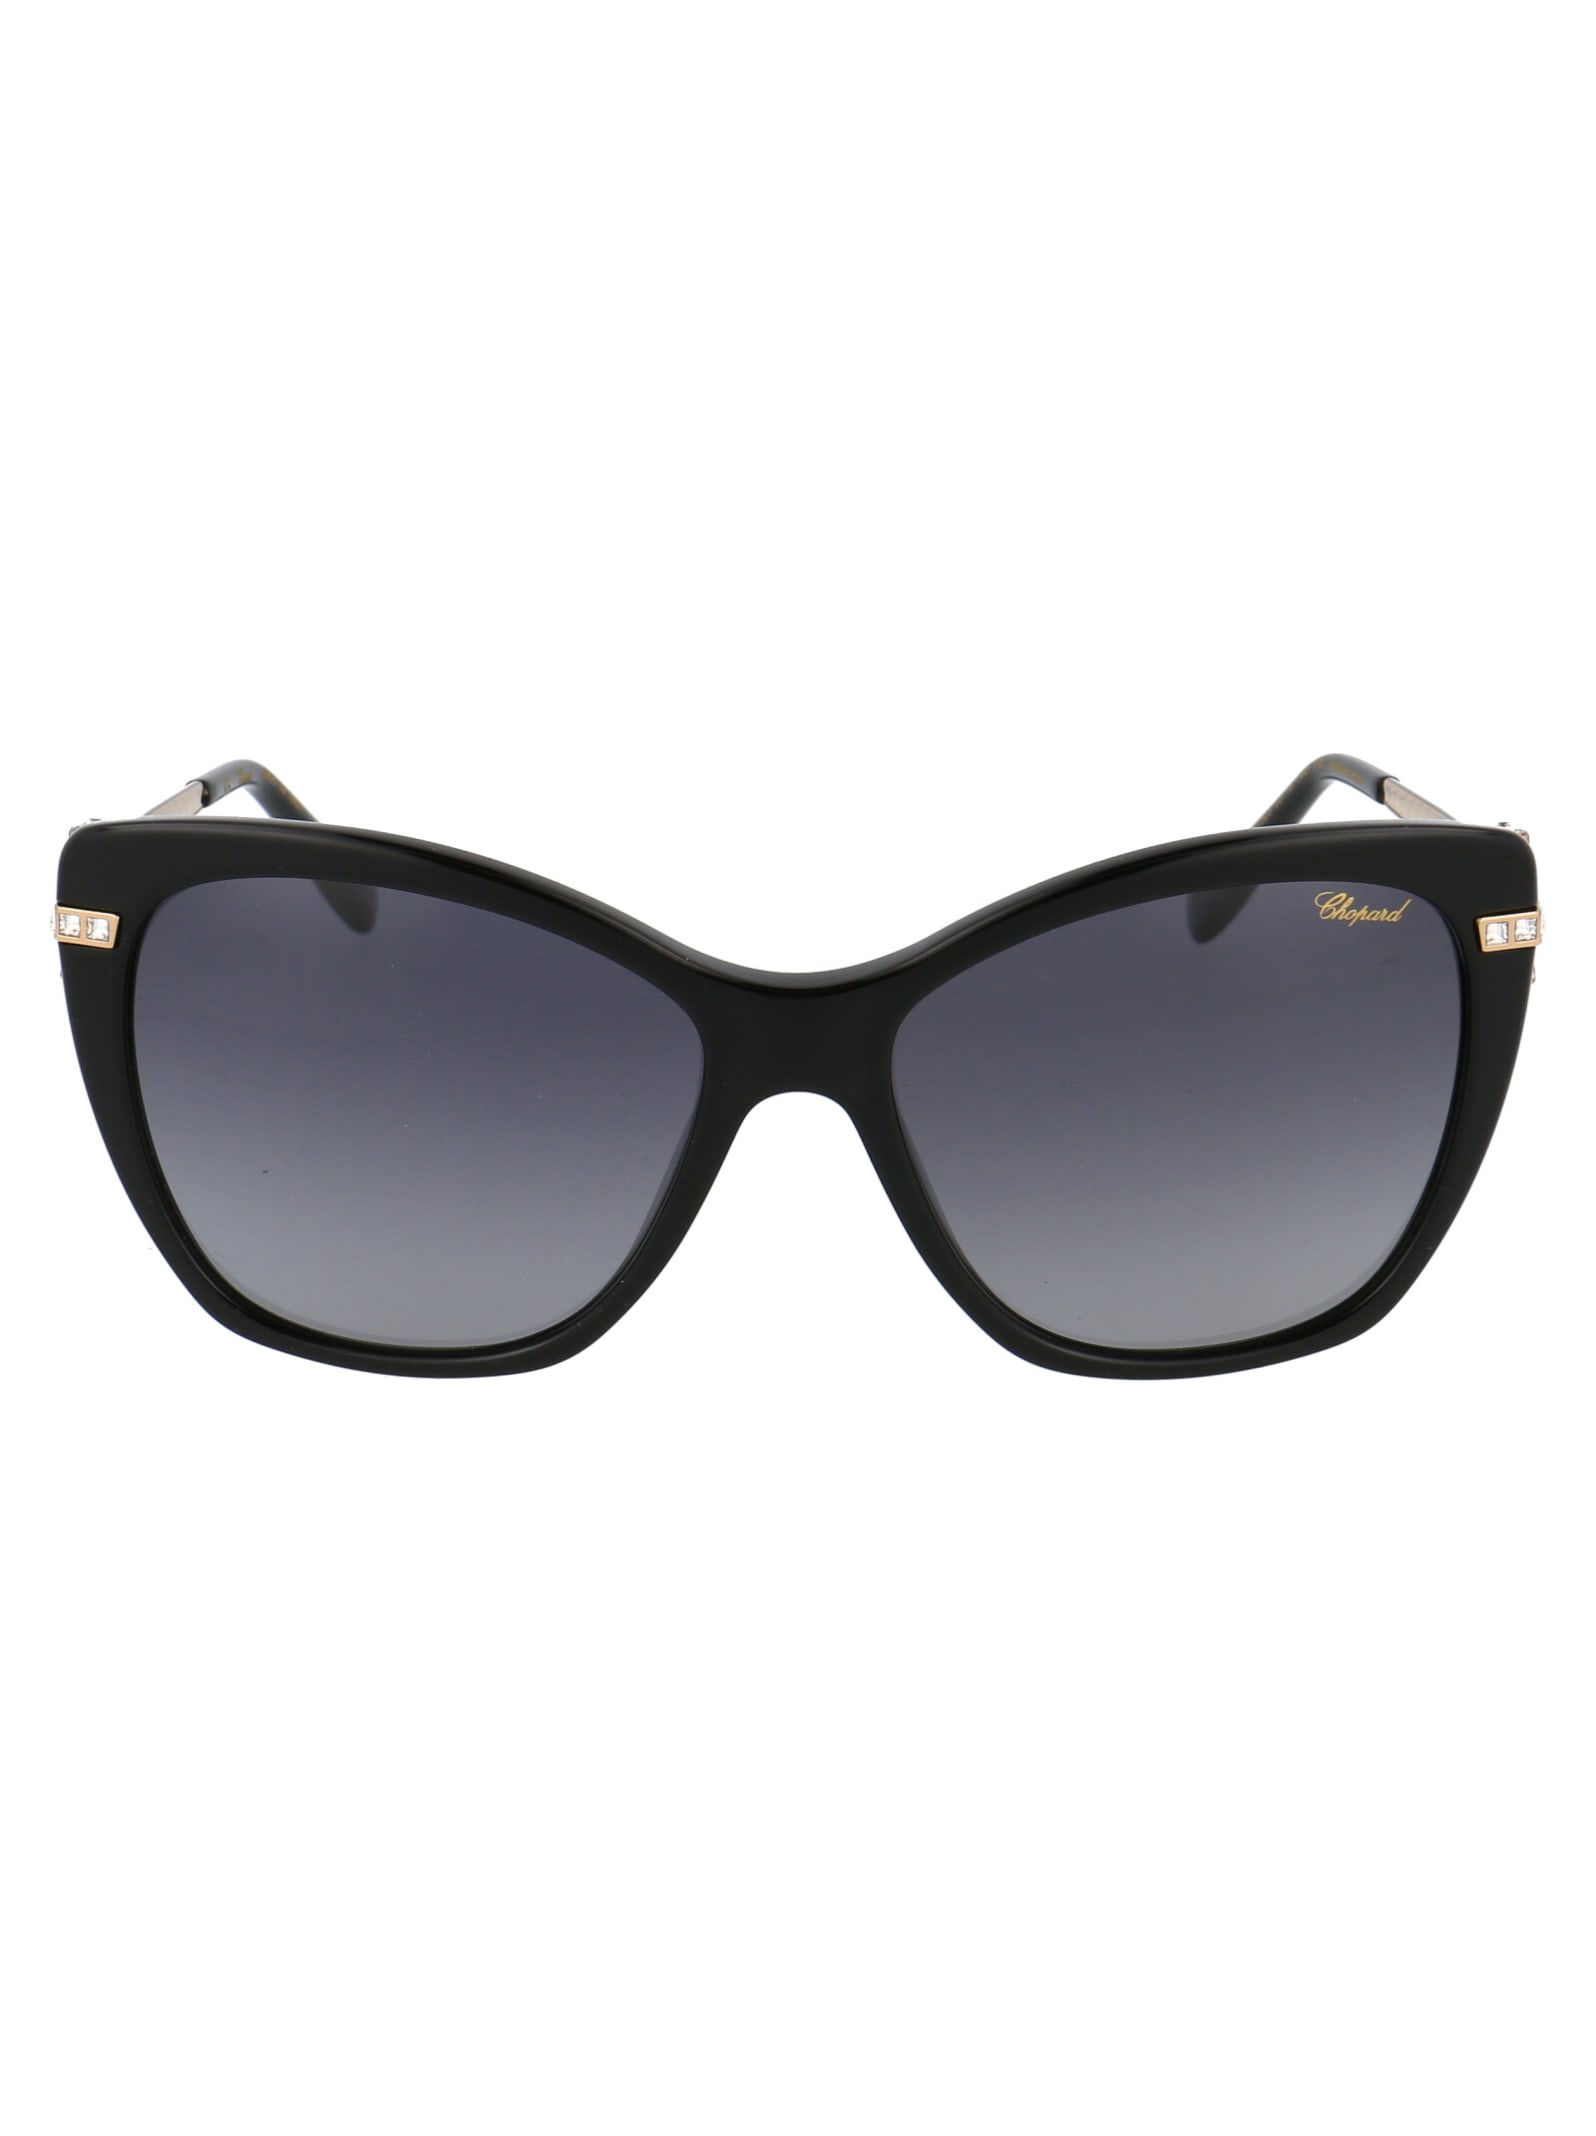 Chopard Sch232s Sunglasses